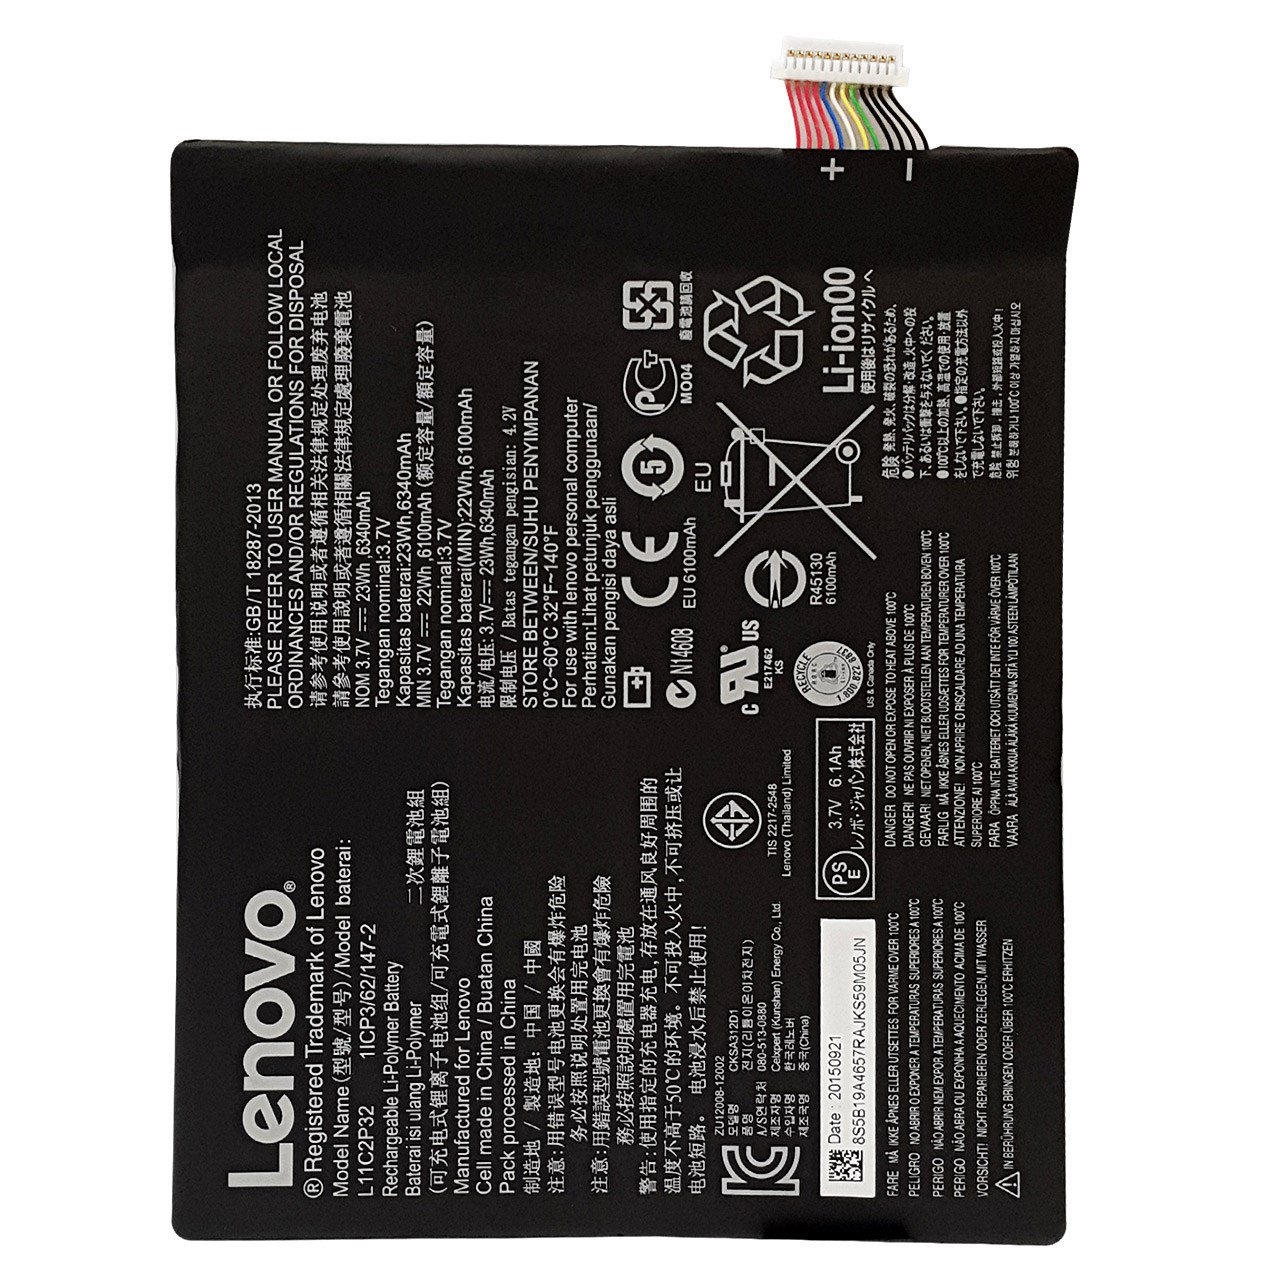 باتری تبلت لنوو مدل L11C2P32 با ظرفیت 6340mAh مناسب برای تبلت لنوو Ideatab S6000